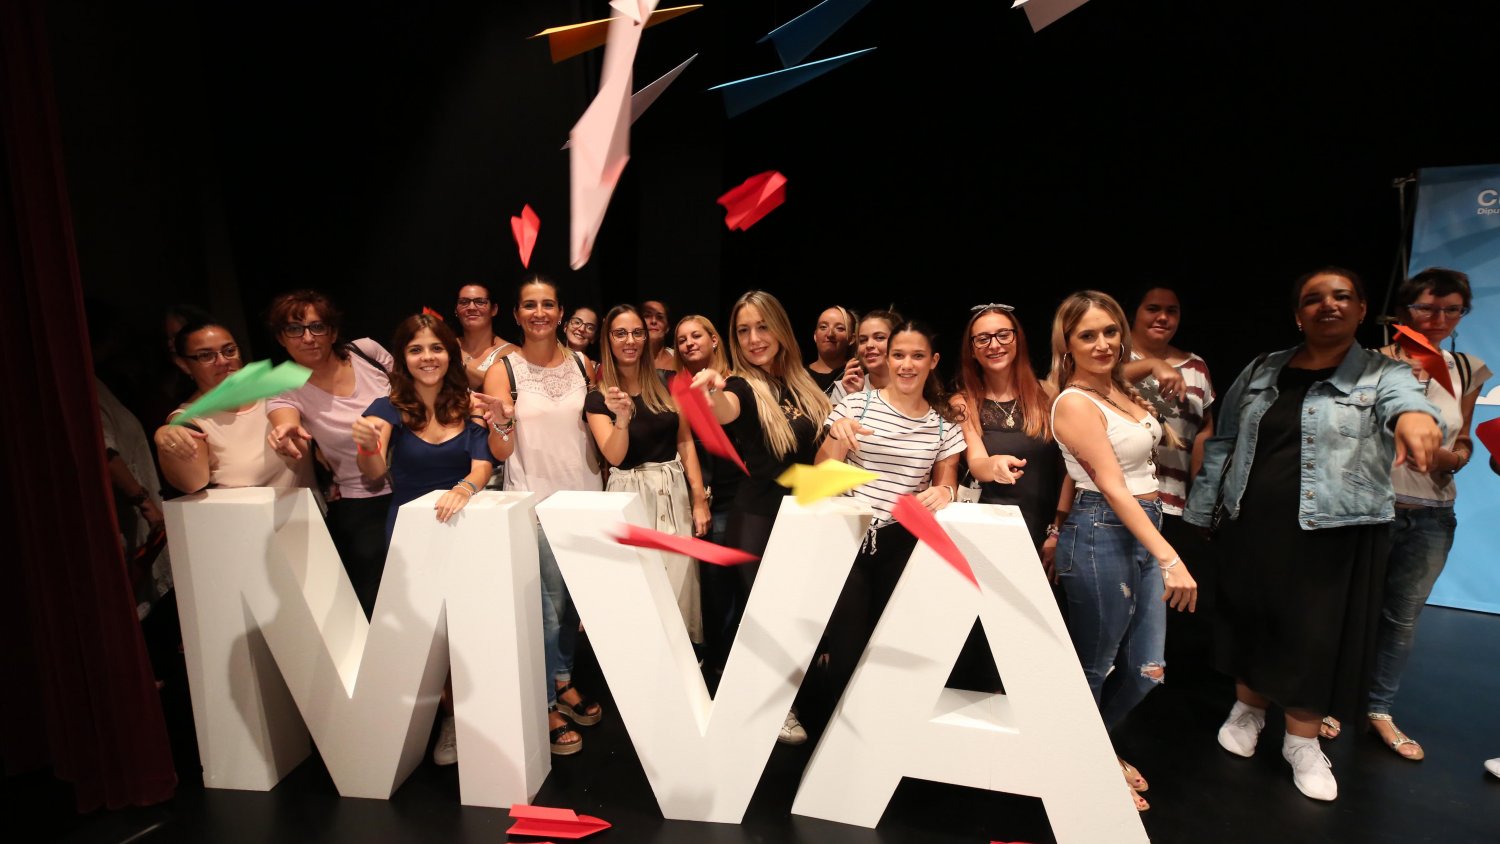 La Diputación celebra el XX aniversario del MVA con la renovación de sus propuestas culturales